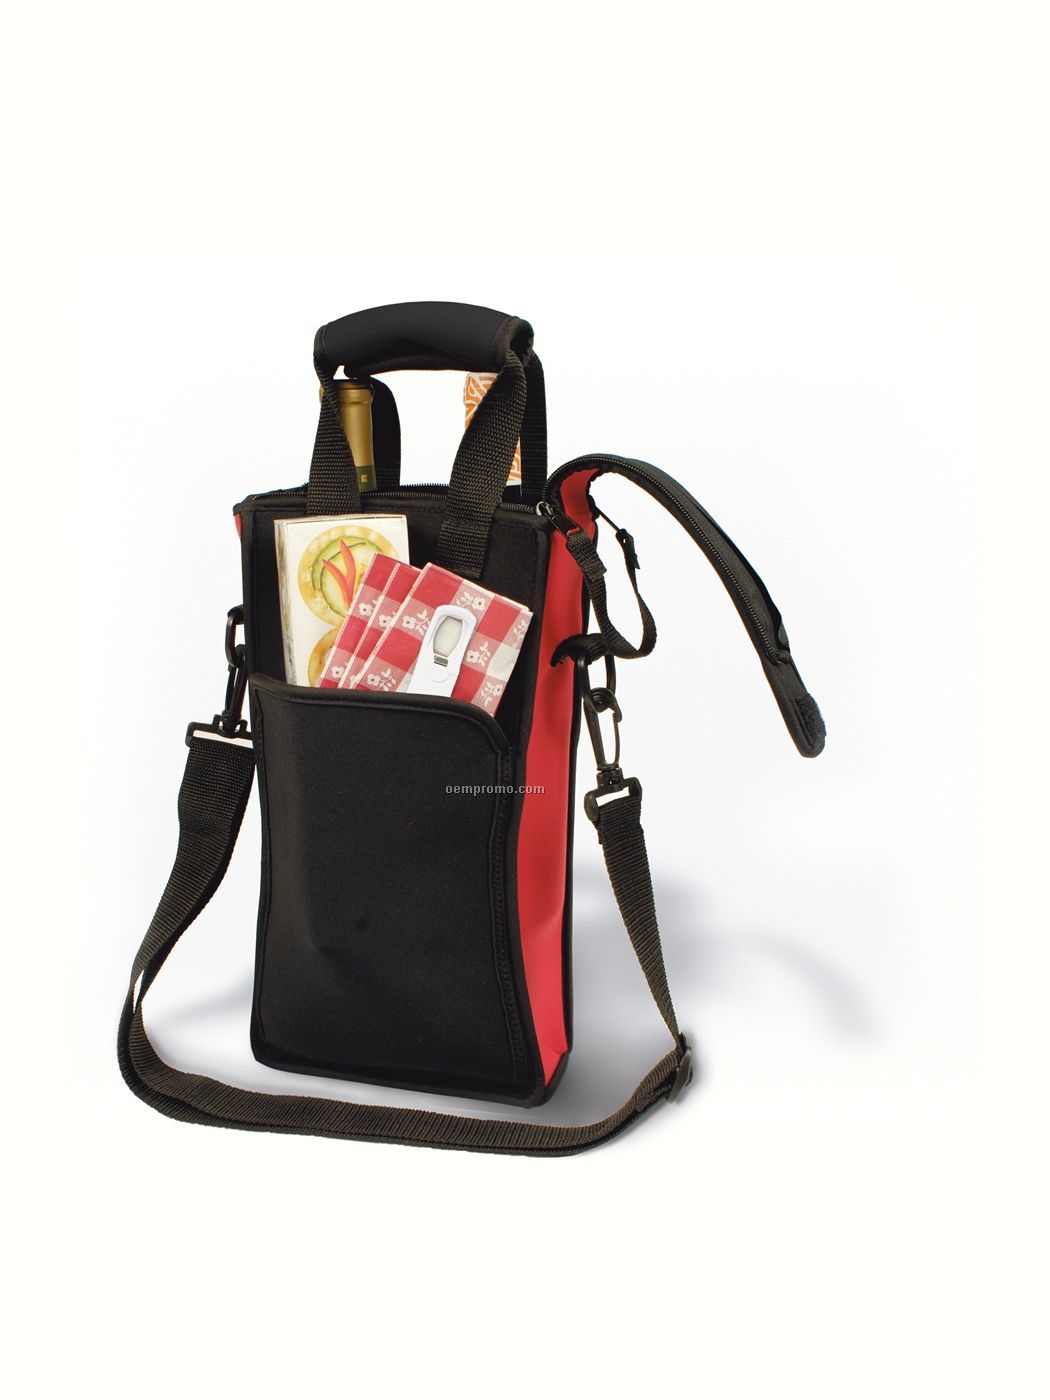 Zip-n-go Picnic Neoprene 2 Bottle Wine Bag With Traveler's Corkscrew- Boxed